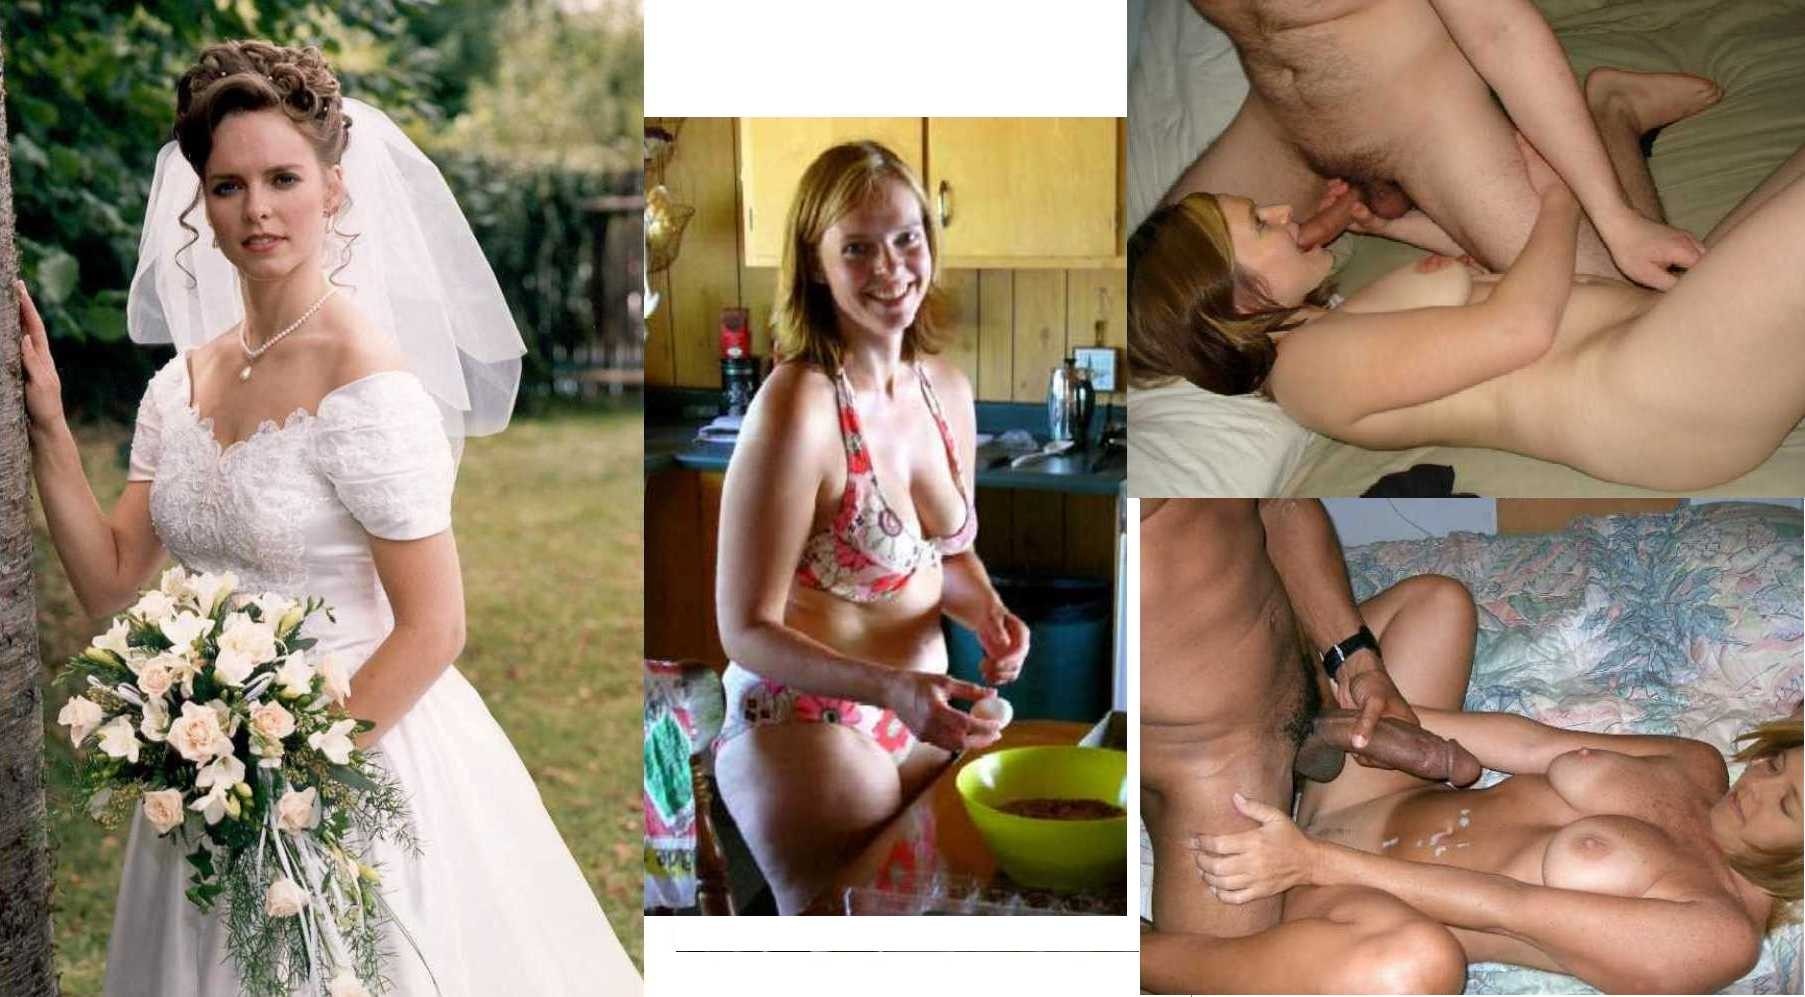 Real Wedding Night Sex (61 photos) - motherless porn pics